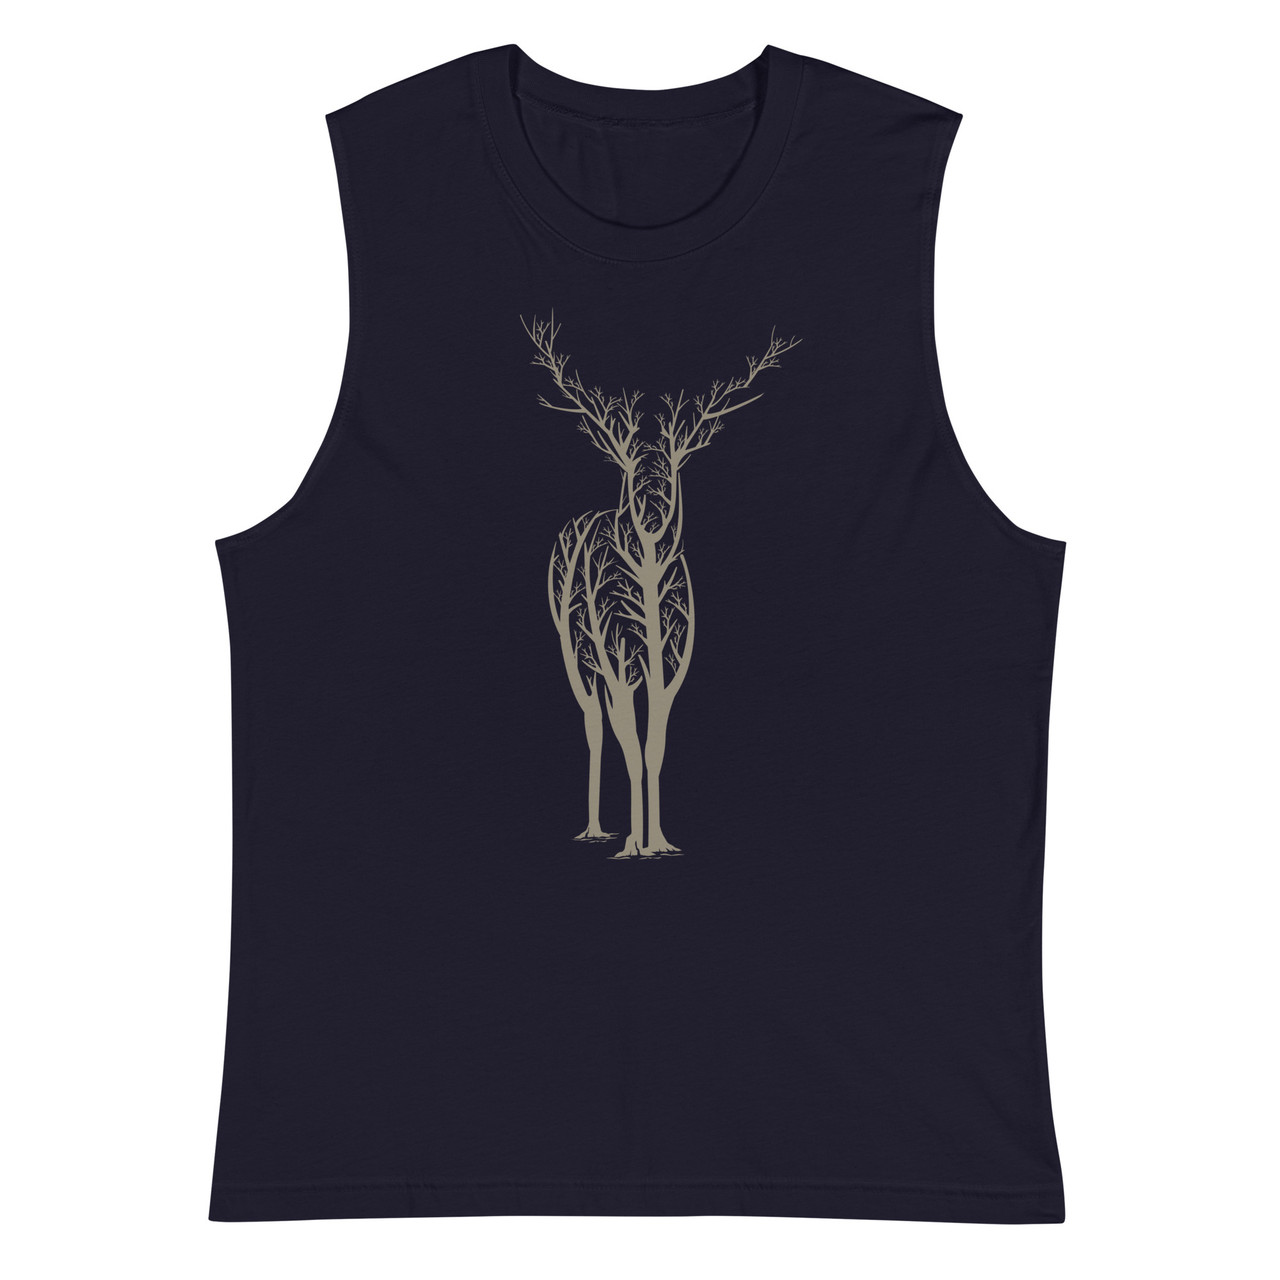 Deer Forest Unisex Muscle Shirt - Bella + Canvas 3483 